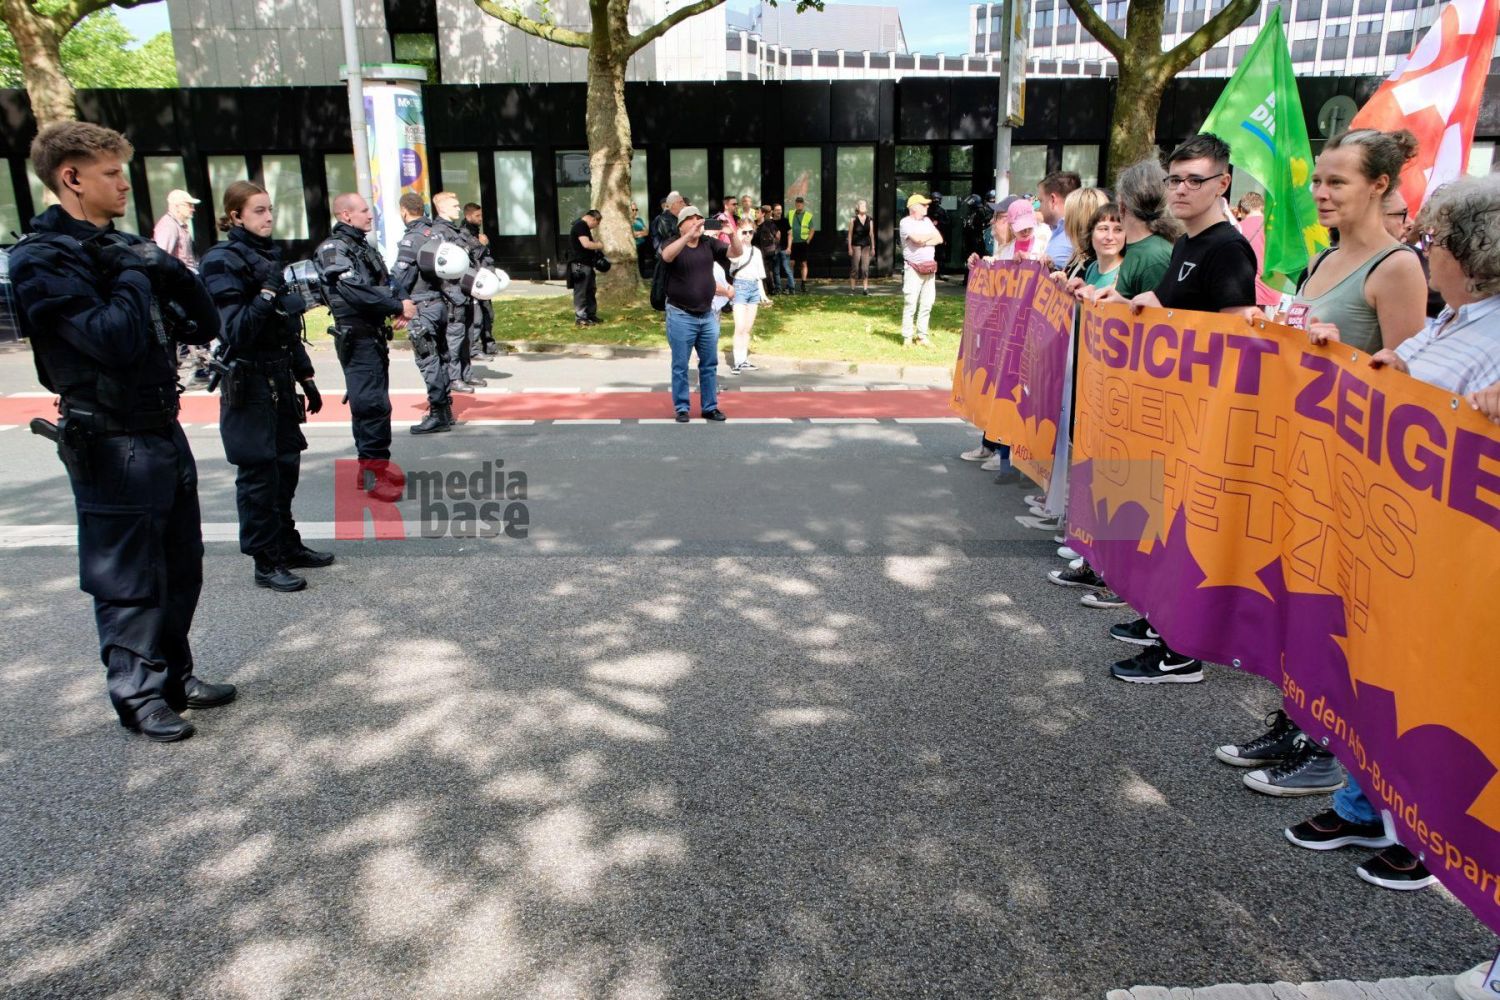 Protest gegen den AfD Parteitag in Essen <i>Bild Bitzel/R-mediabase</i> <br><a href=/confor2/?bld=82761&pst=82745&aid=70&dc=0938&i1=Bitzel/R-mediabase><strong>Downloadanfrage</strong></a>  